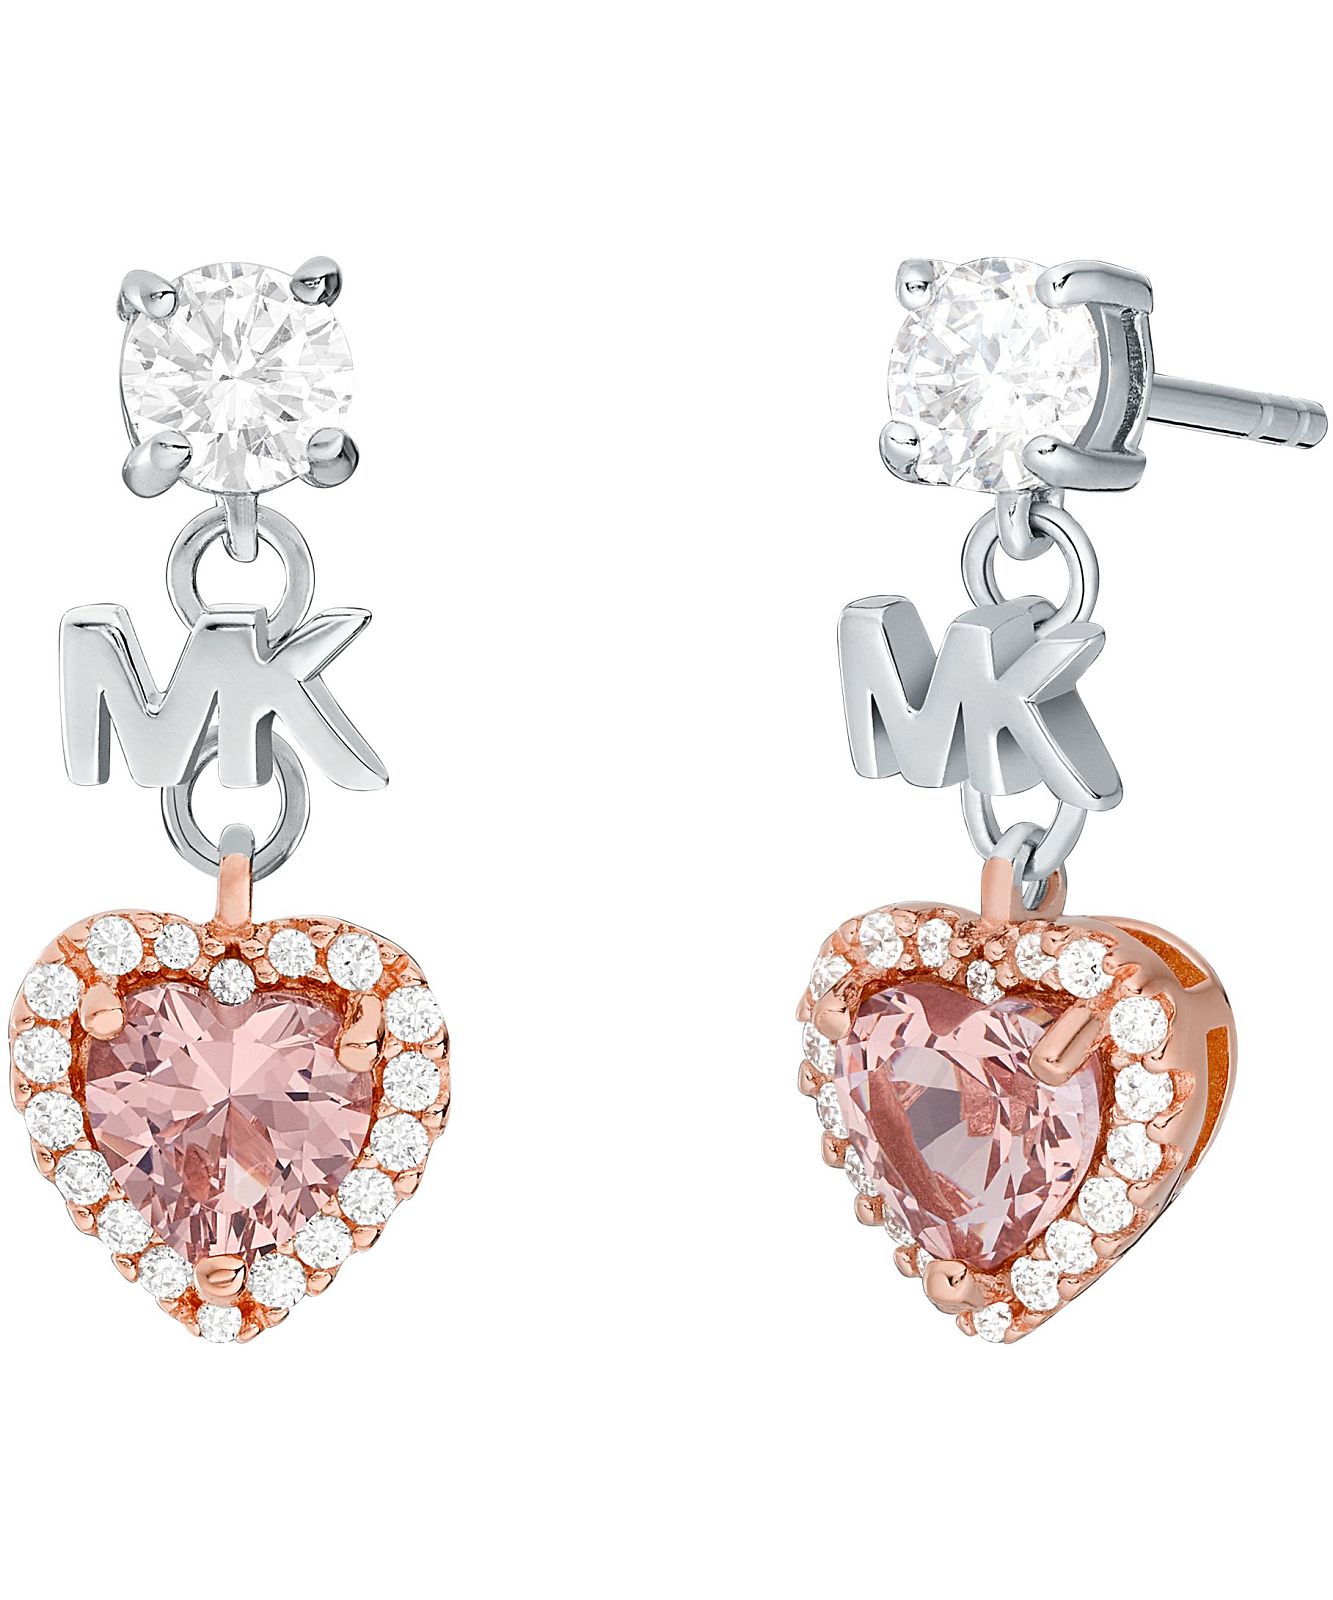 Crystal earrings Michael Kors Pink in Crystal - 24980787